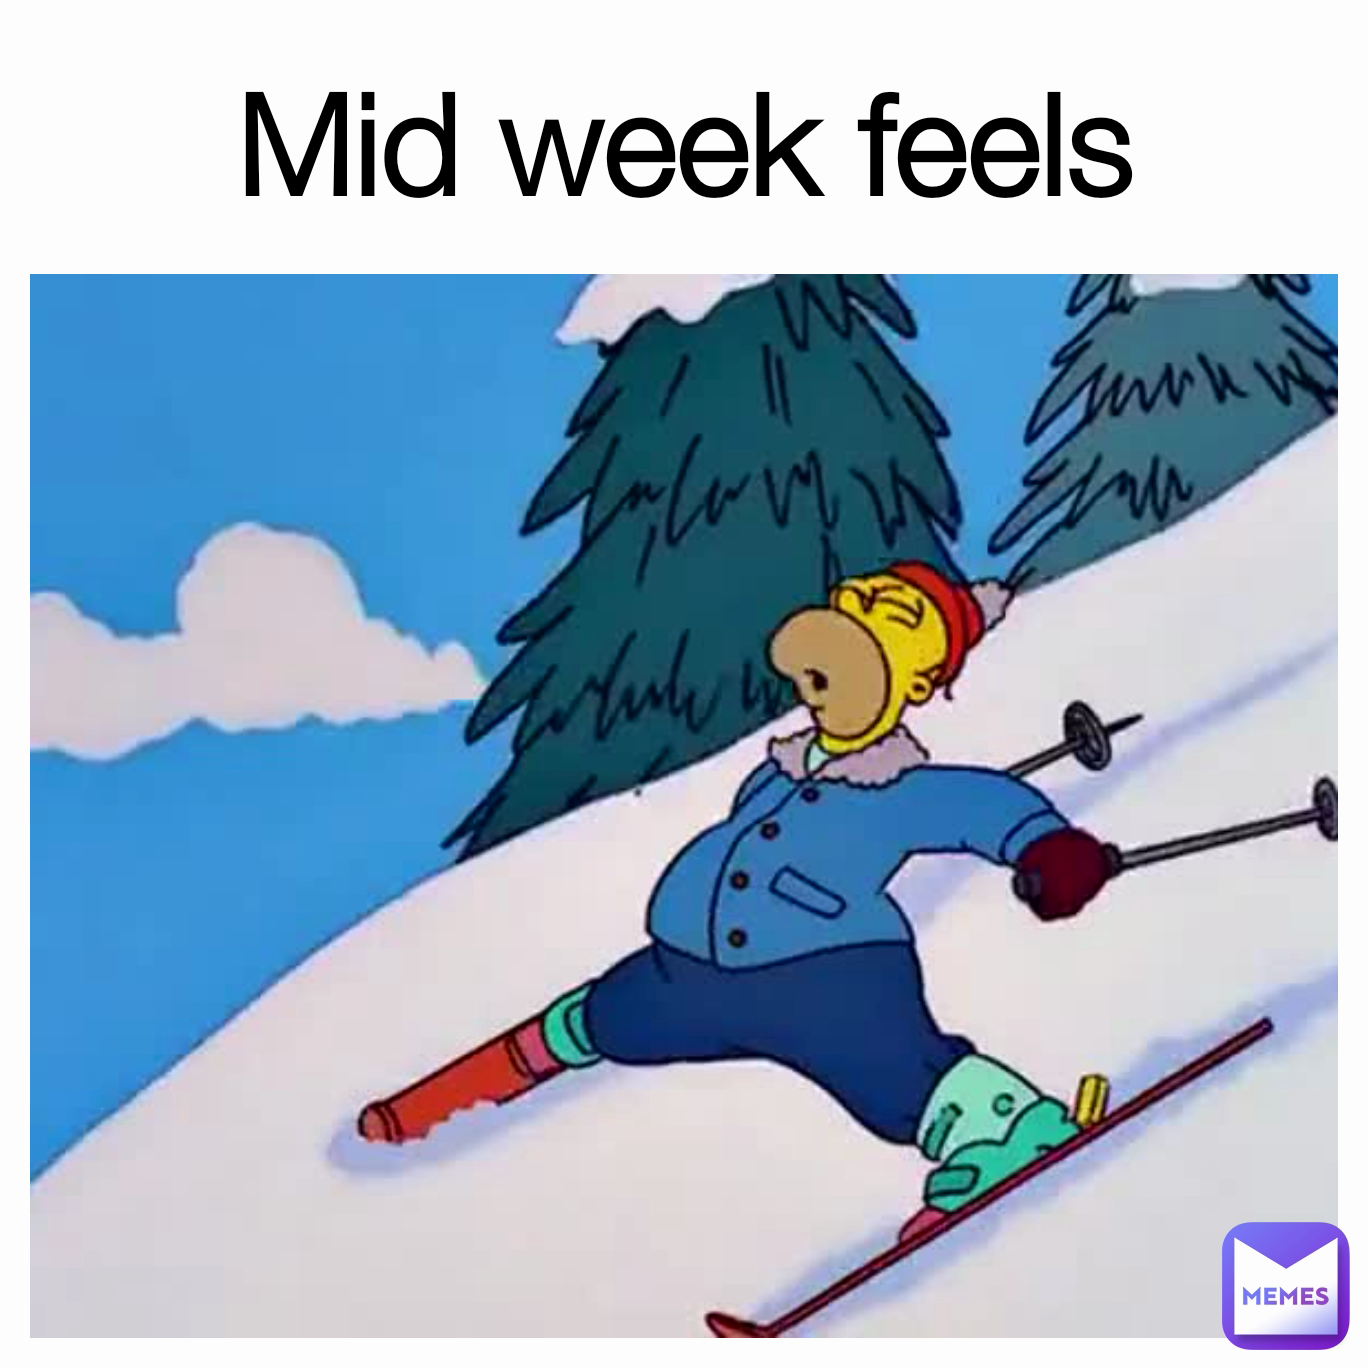 Mid week feels